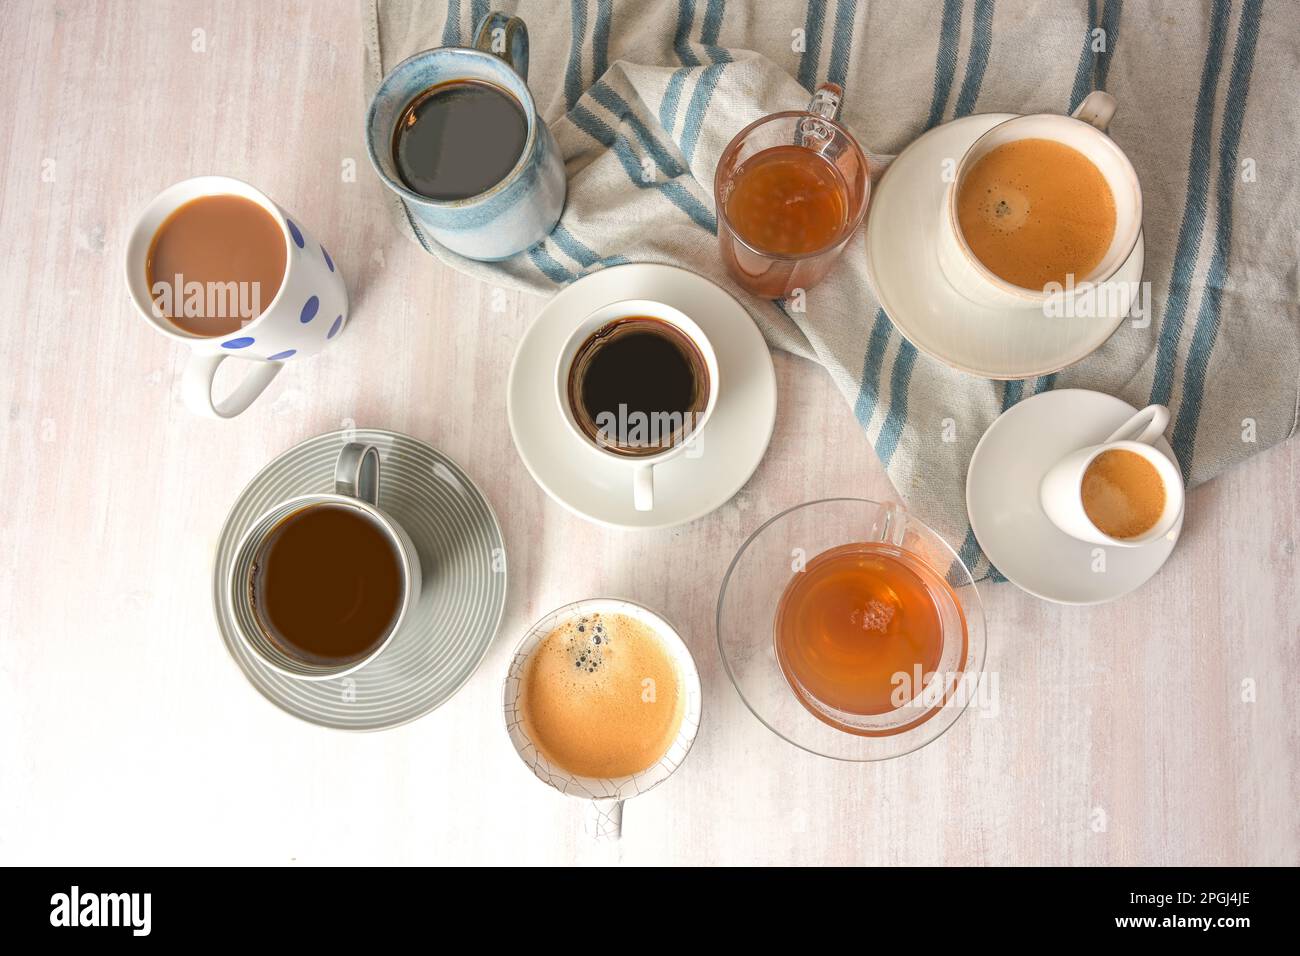 Diverse tazze e tazze con caffè e tè bevande su un tavolo leggero con un asciugamano grigio blu, vista dall'alto ad angolo alto, messa a fuoco selezionata, stretto Foto Stock